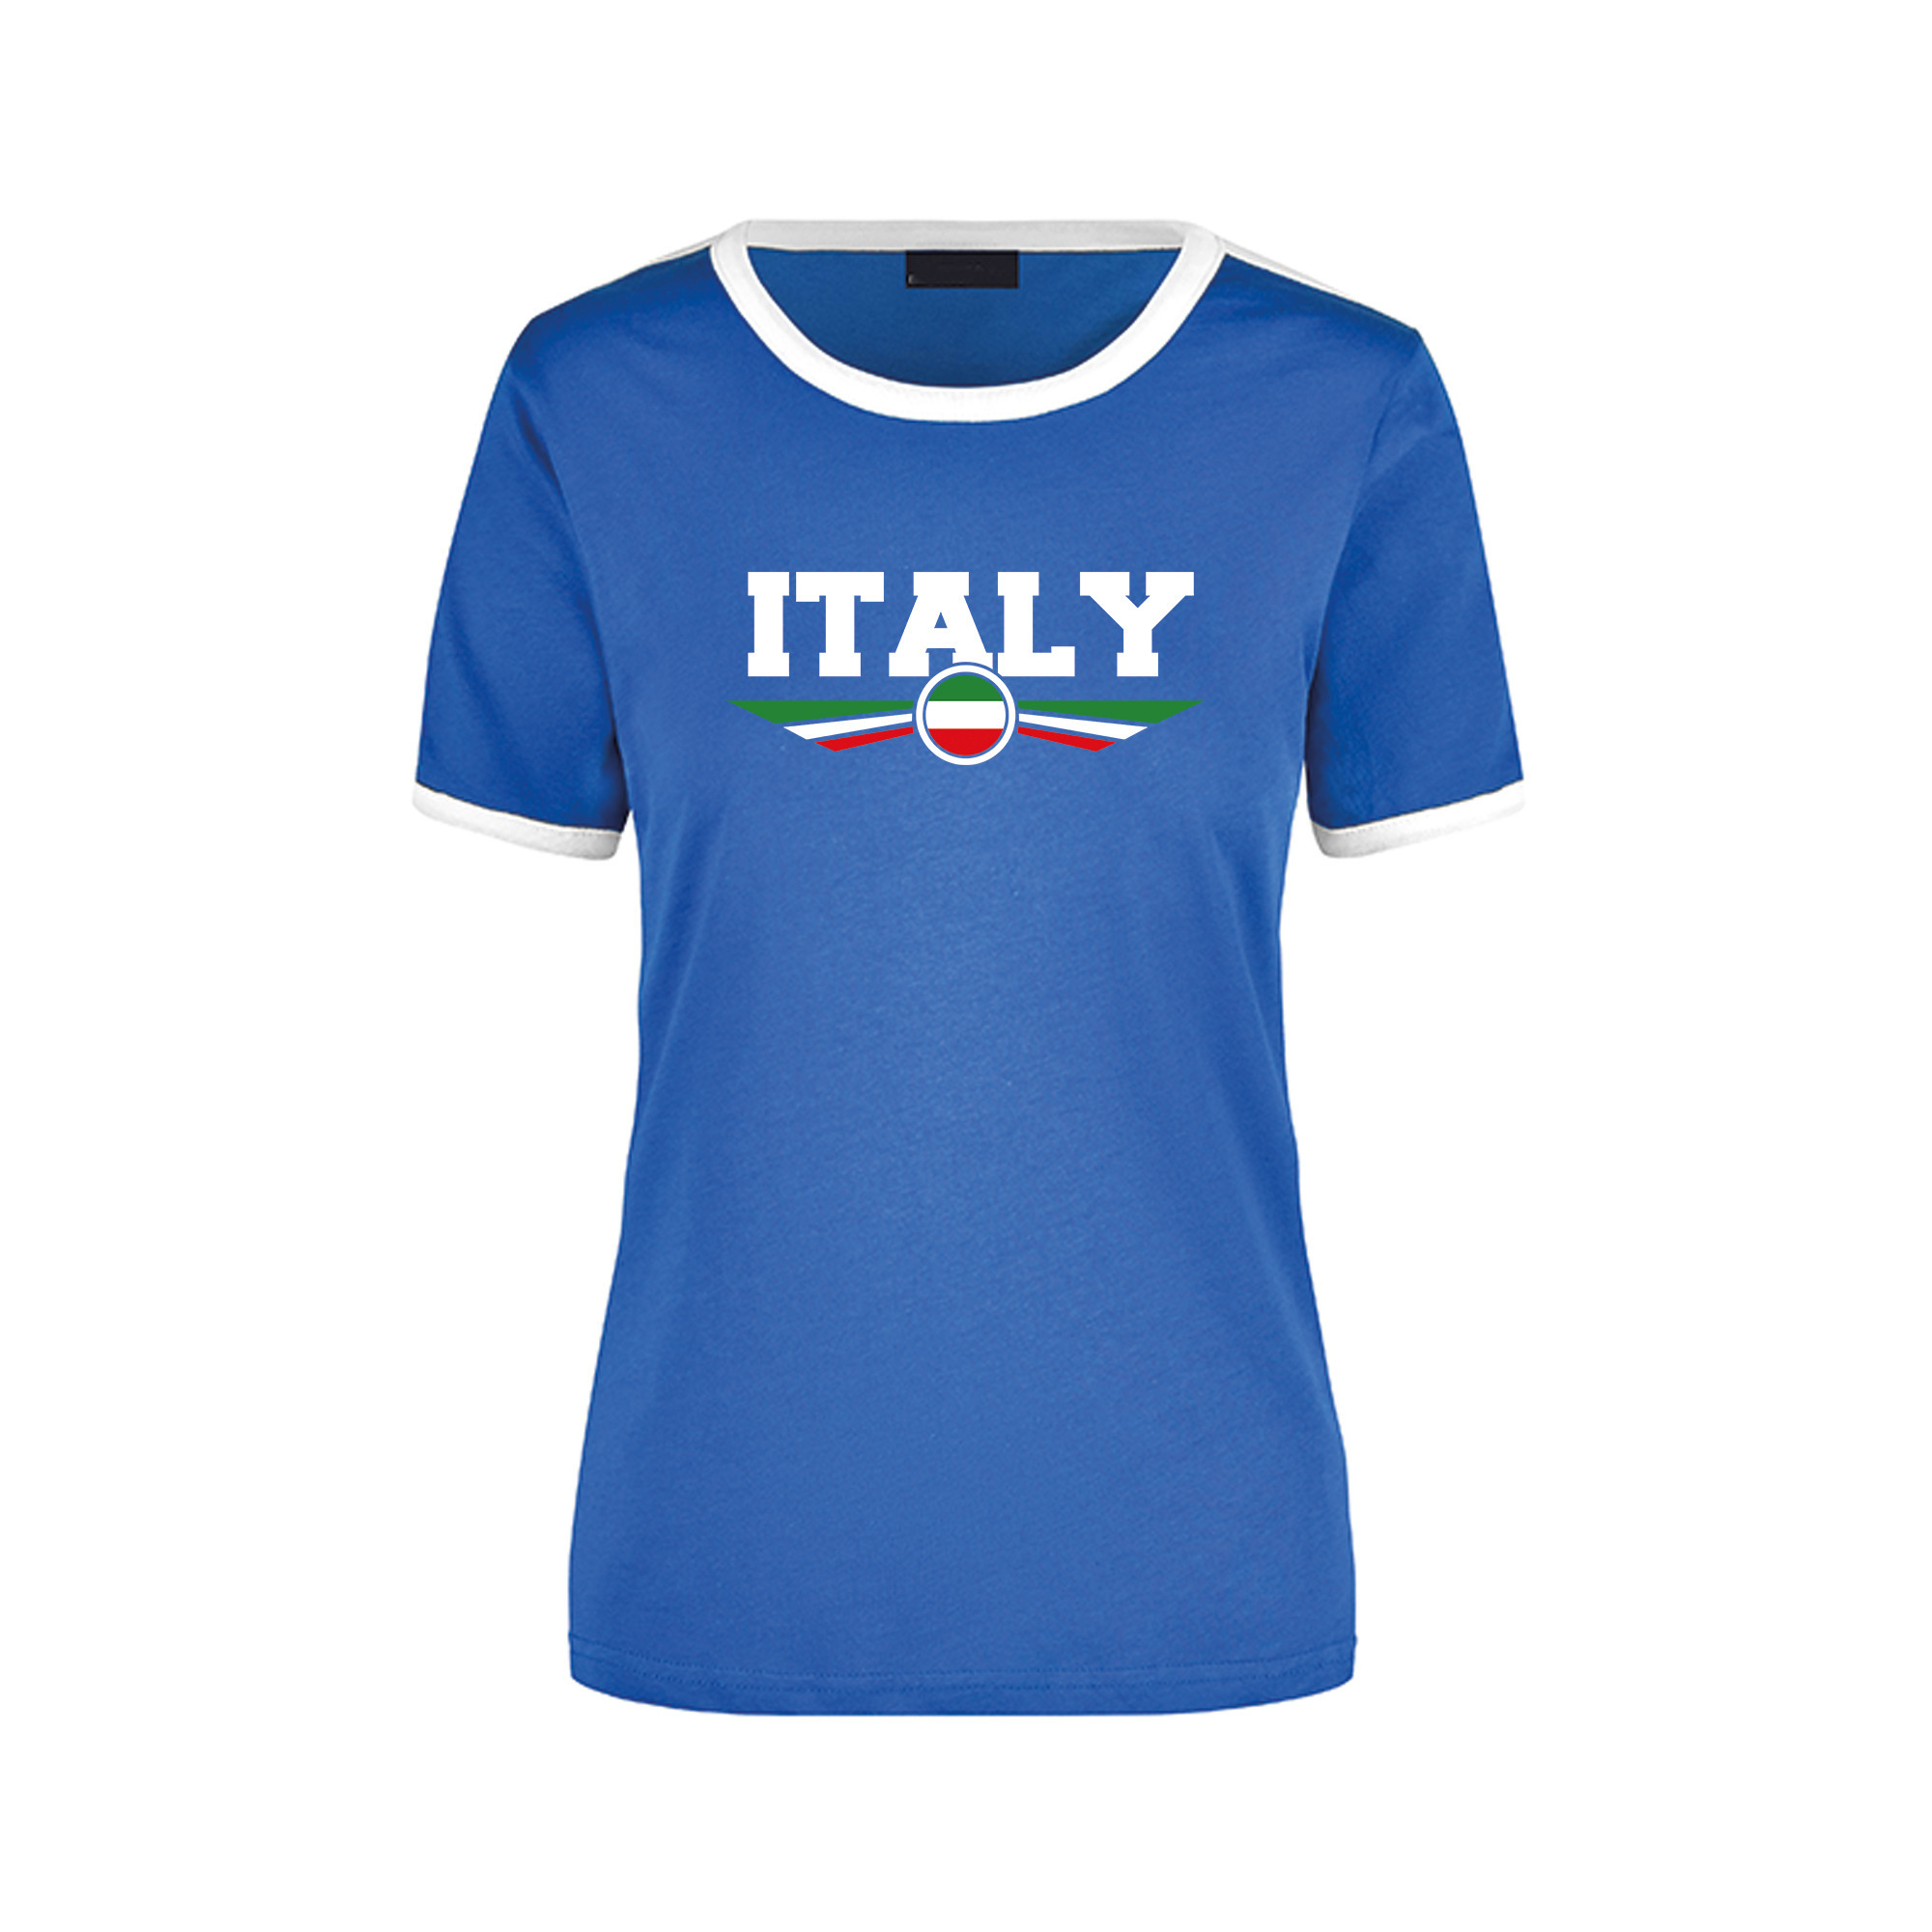 Italy blauw - wit ringer landen t-shirt logo met vlag Italie voor dames